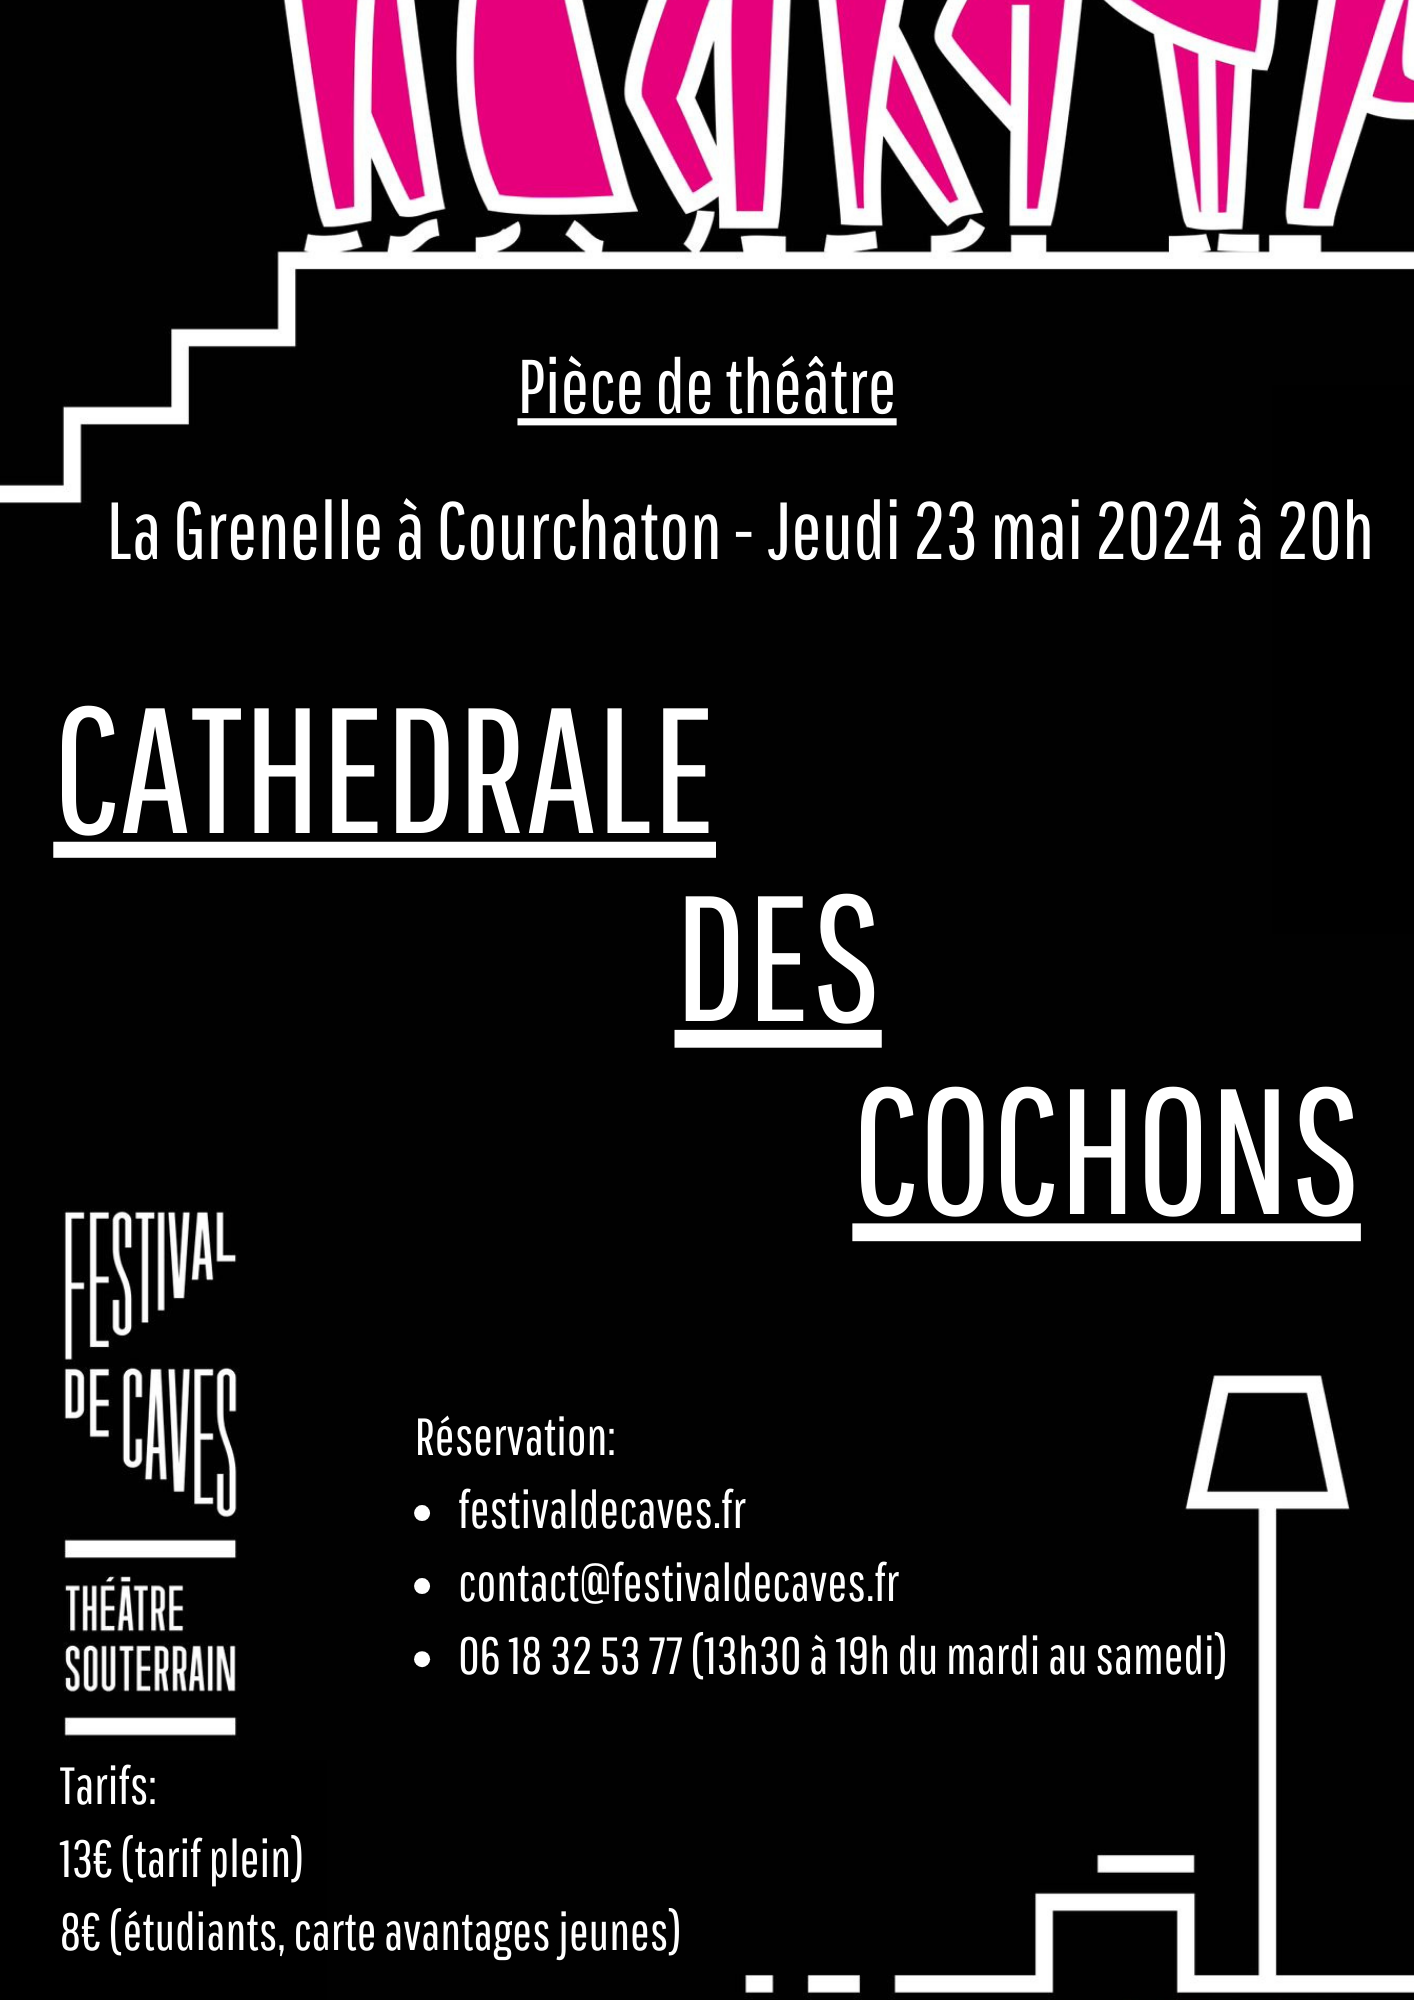 Théâtre à La Grenelle- Festival de caves 